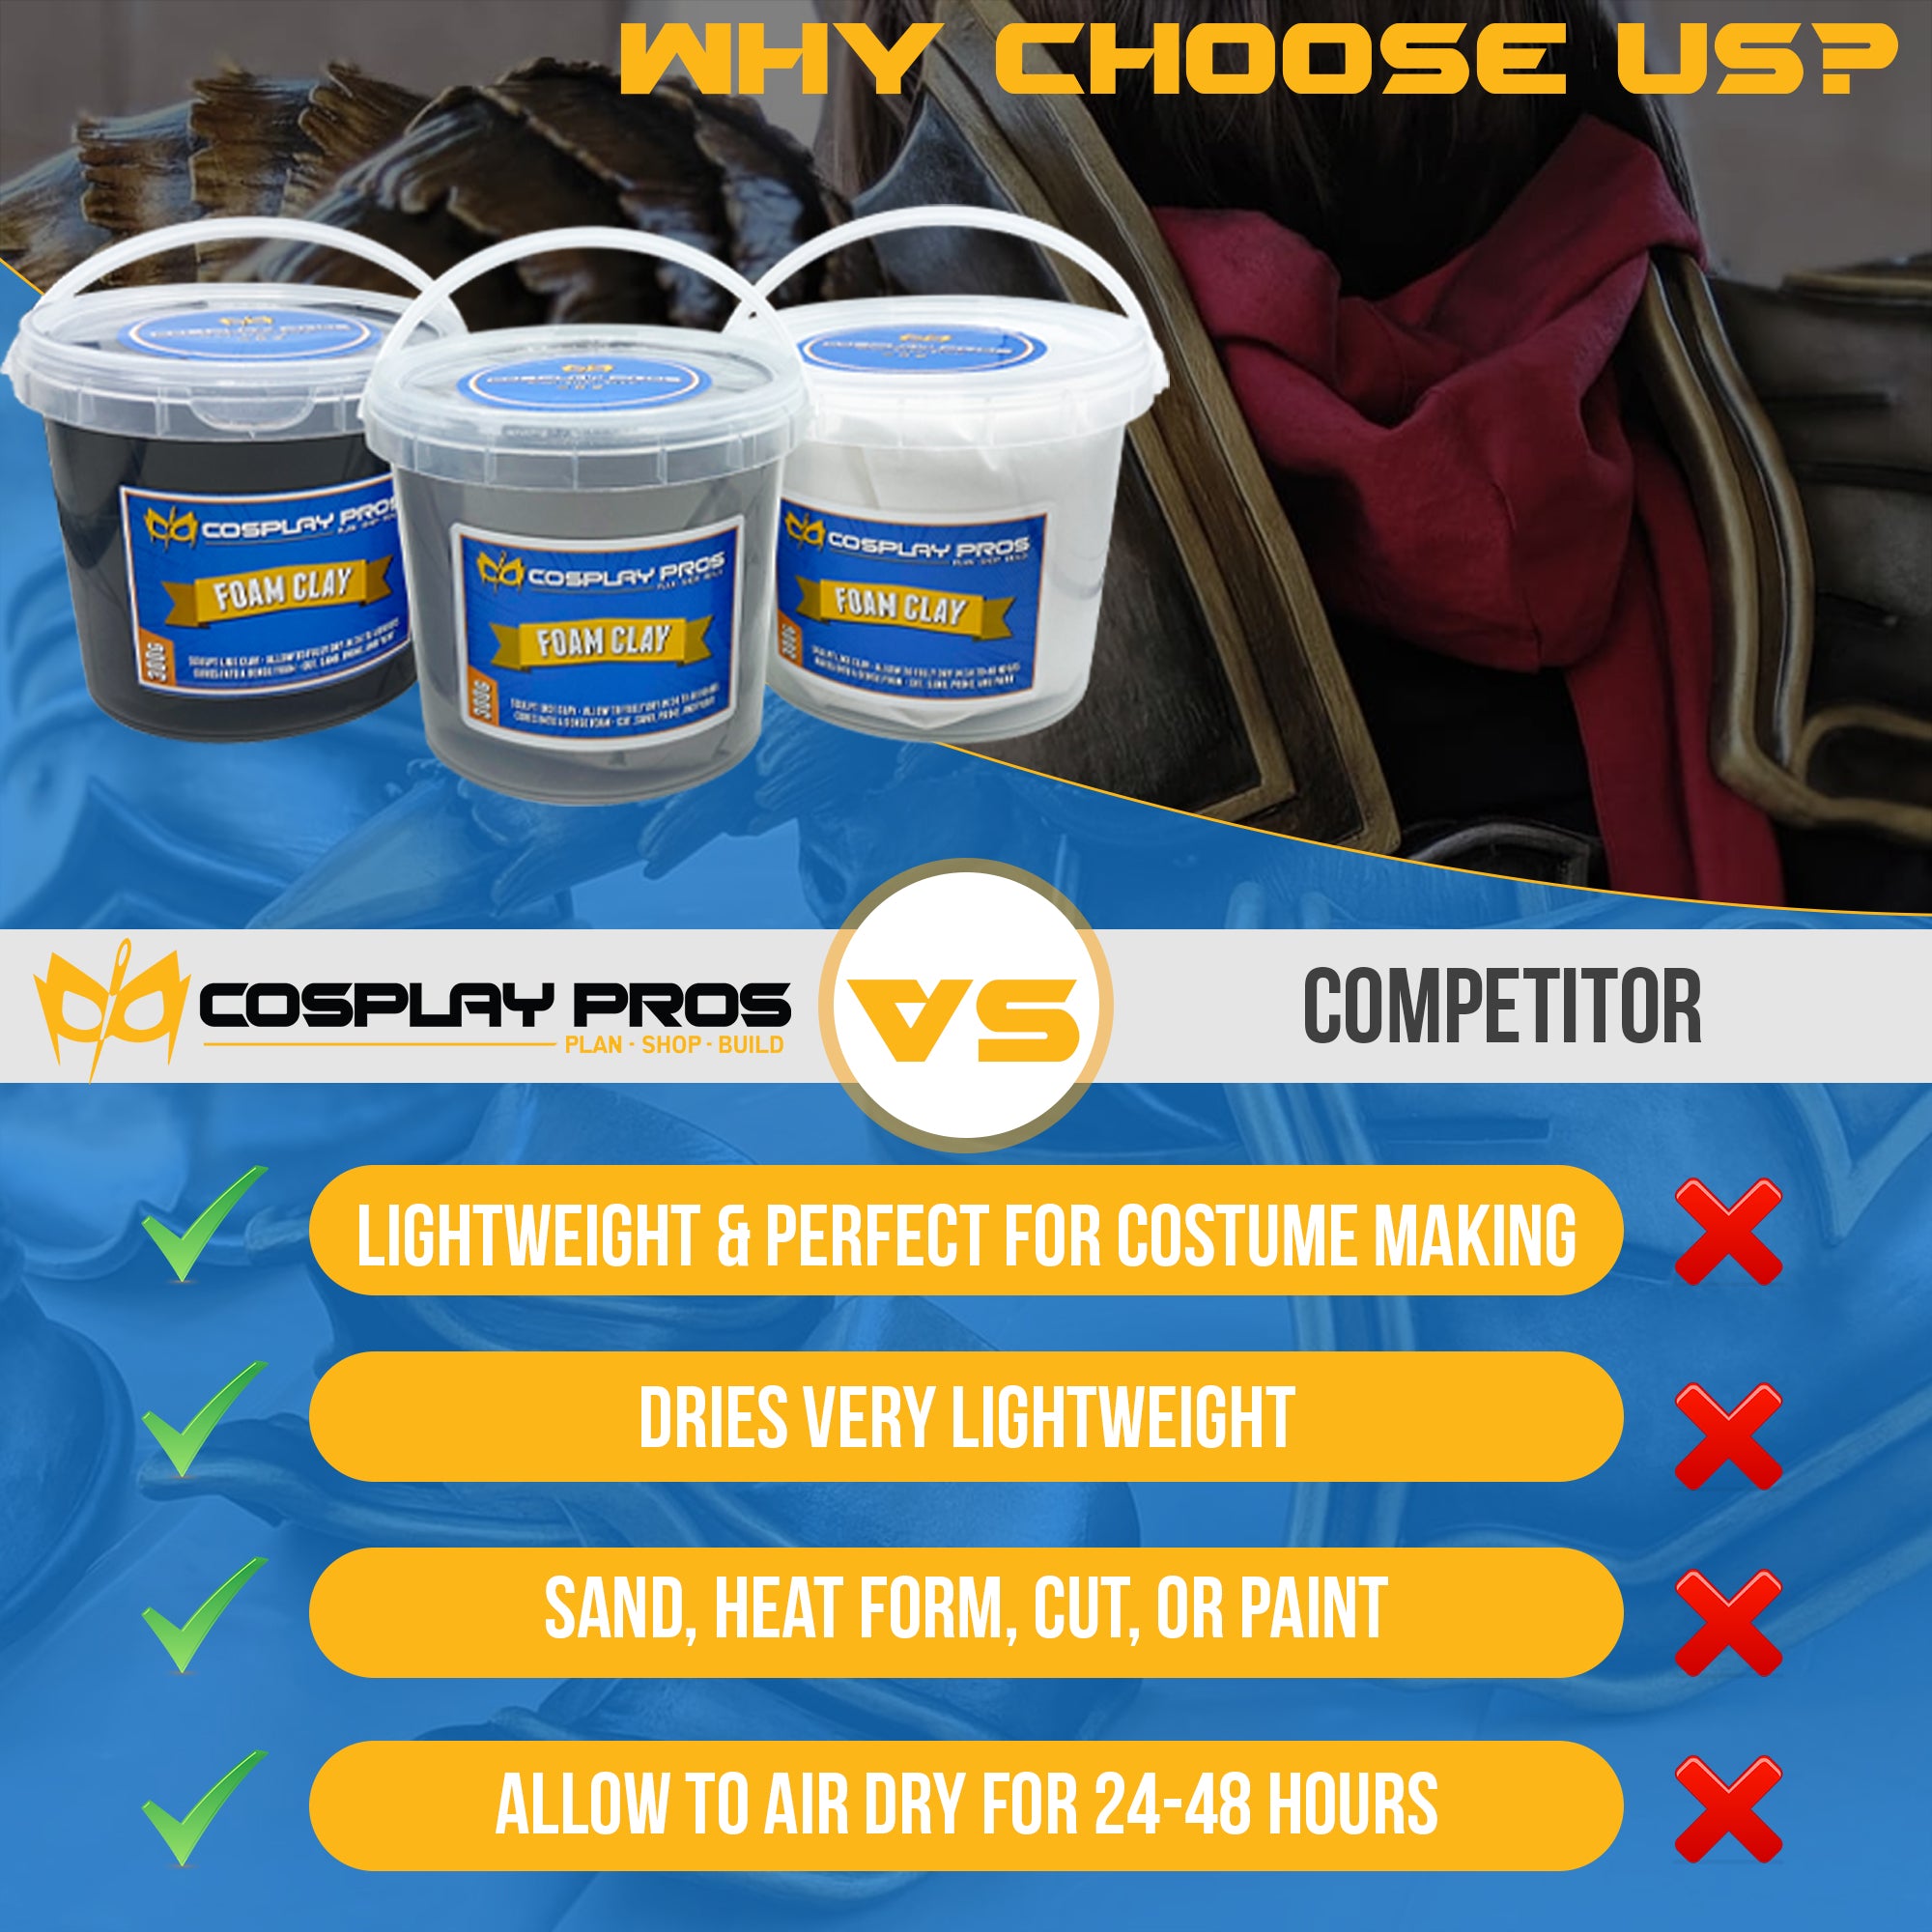 Cosplay Pros Foam Clay – CosplayPros